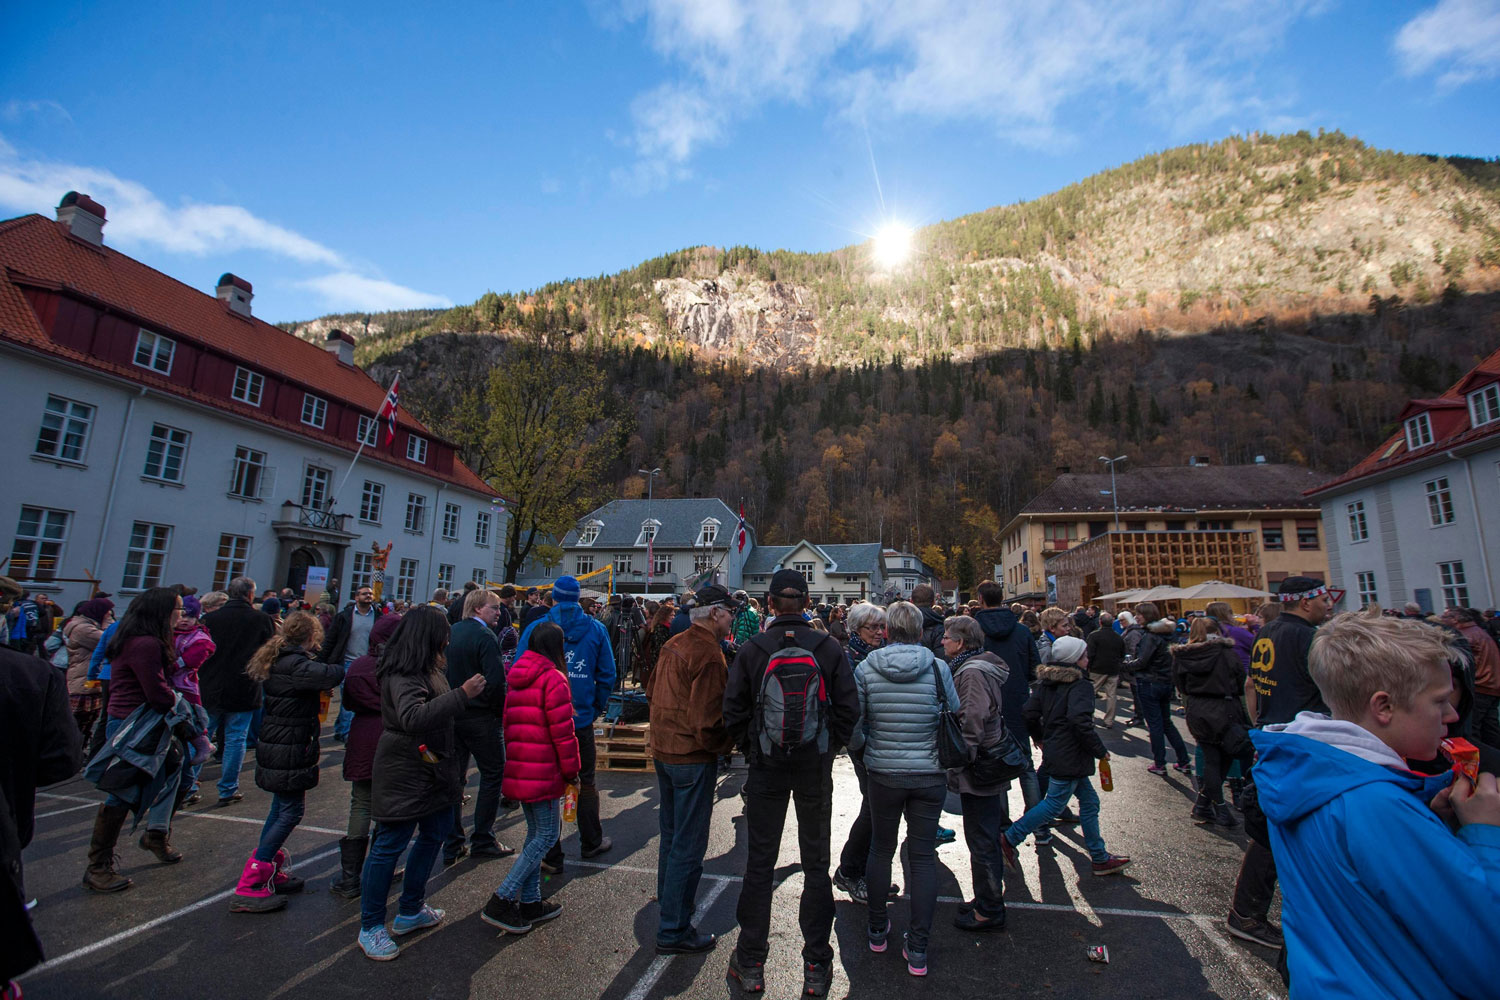 Se inaugura en Noruega un sistema para tener la luz solar que no reciben durante 6 meses al año